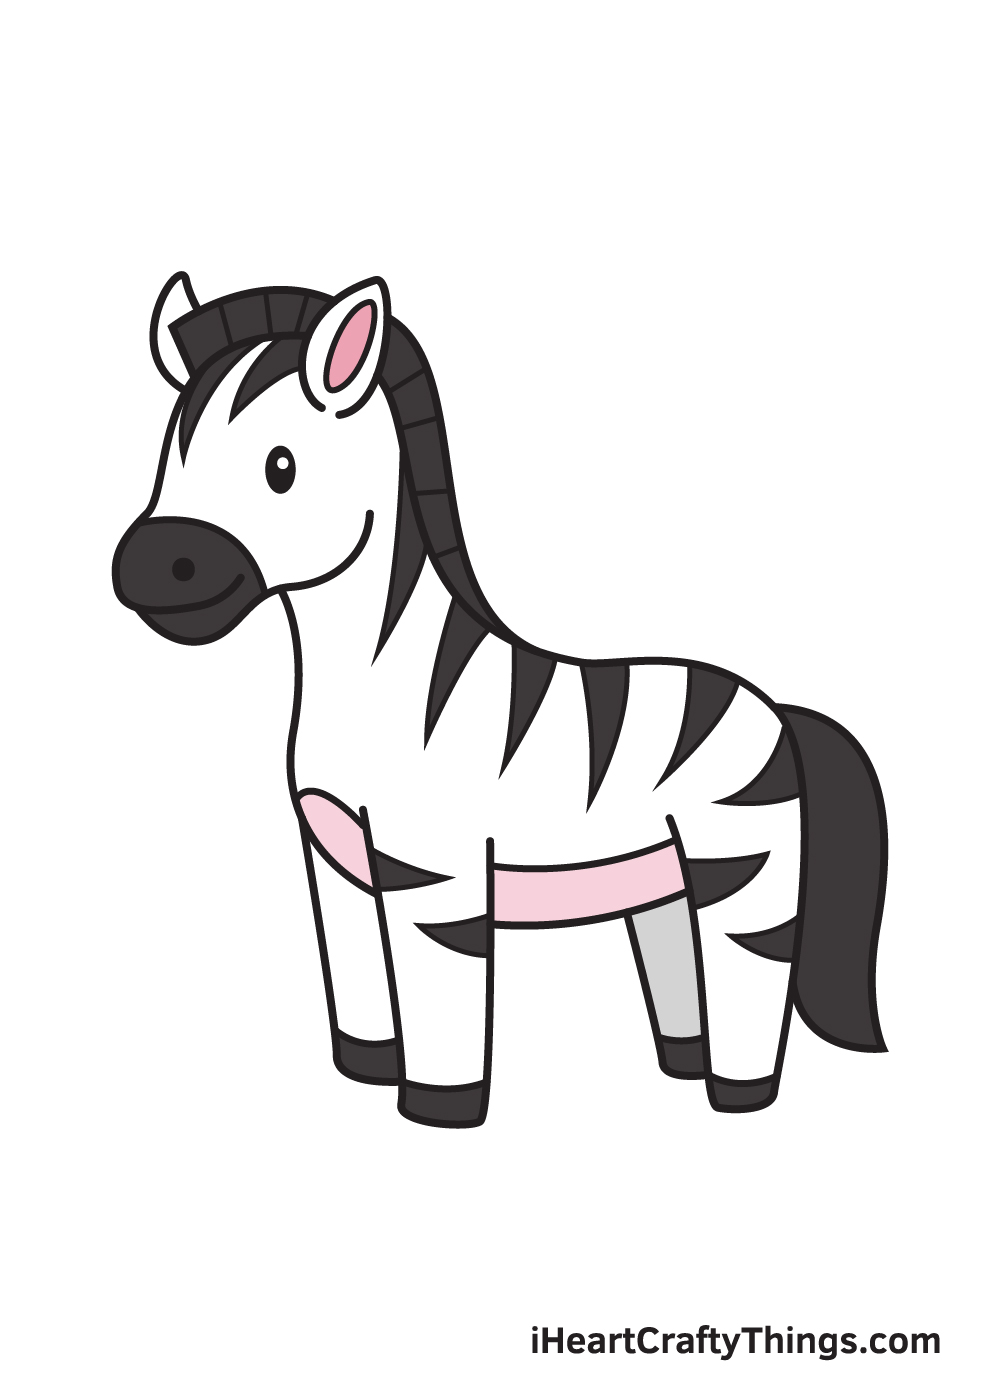 Zebra DRAWING – STEP 10 - Hướng dẫn cách vẽ con ngựa vằn đơn giản với 9 bước cơ bản